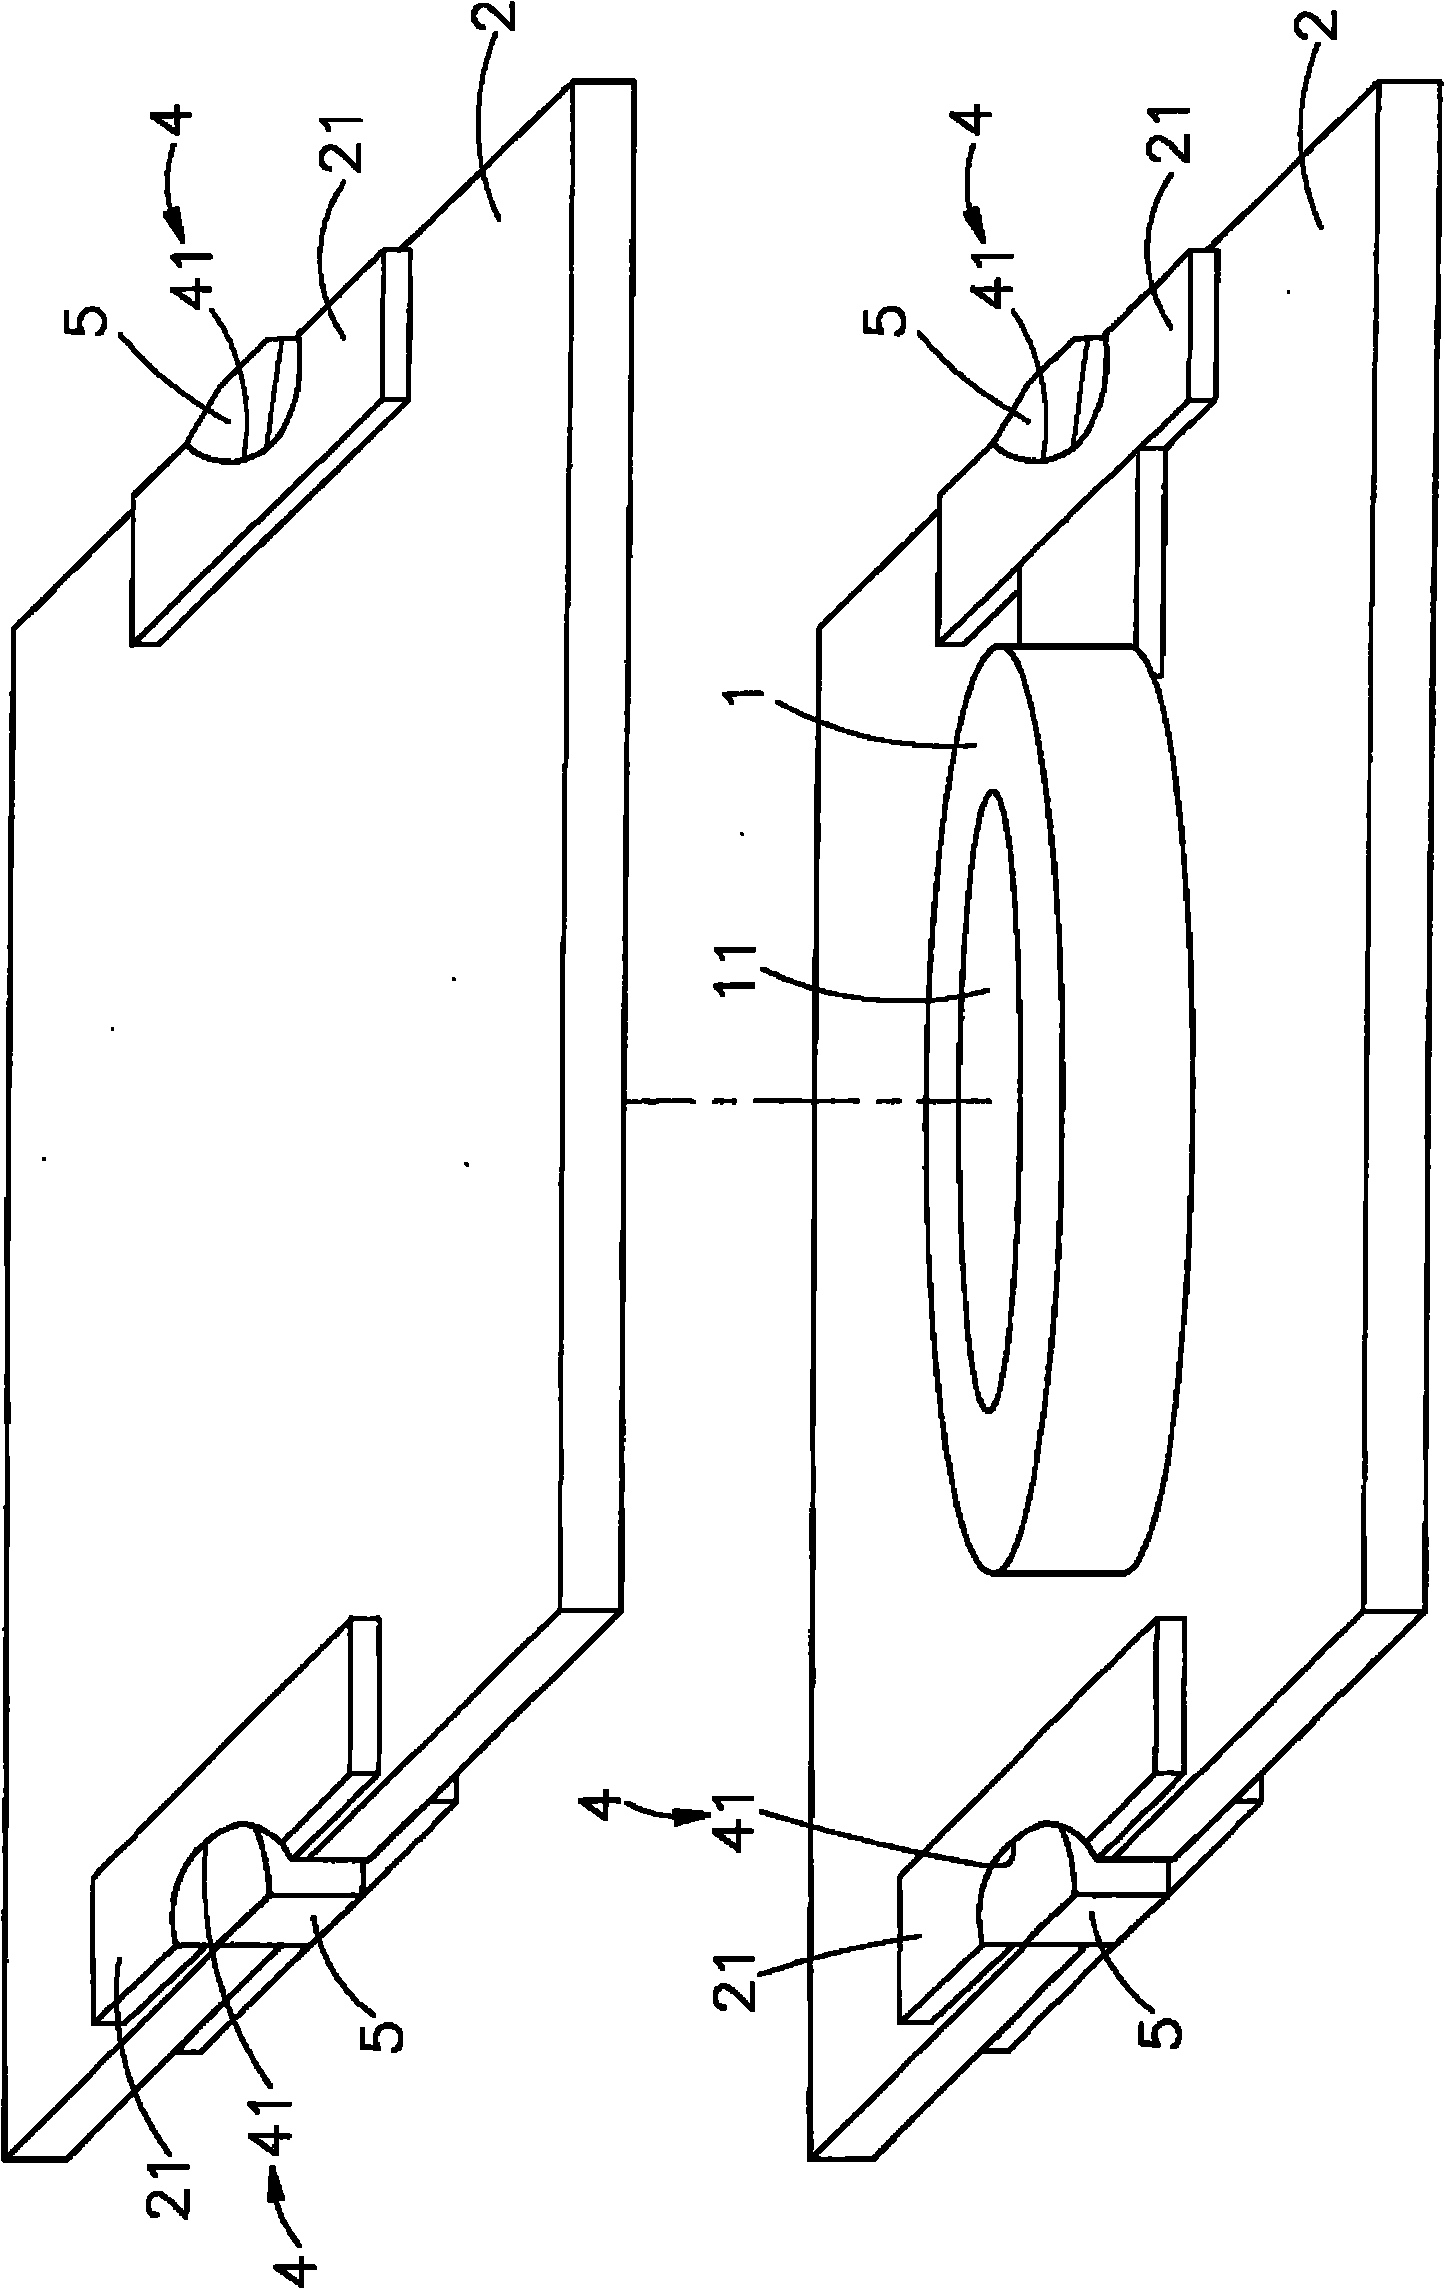 Ceramic capacitor structure